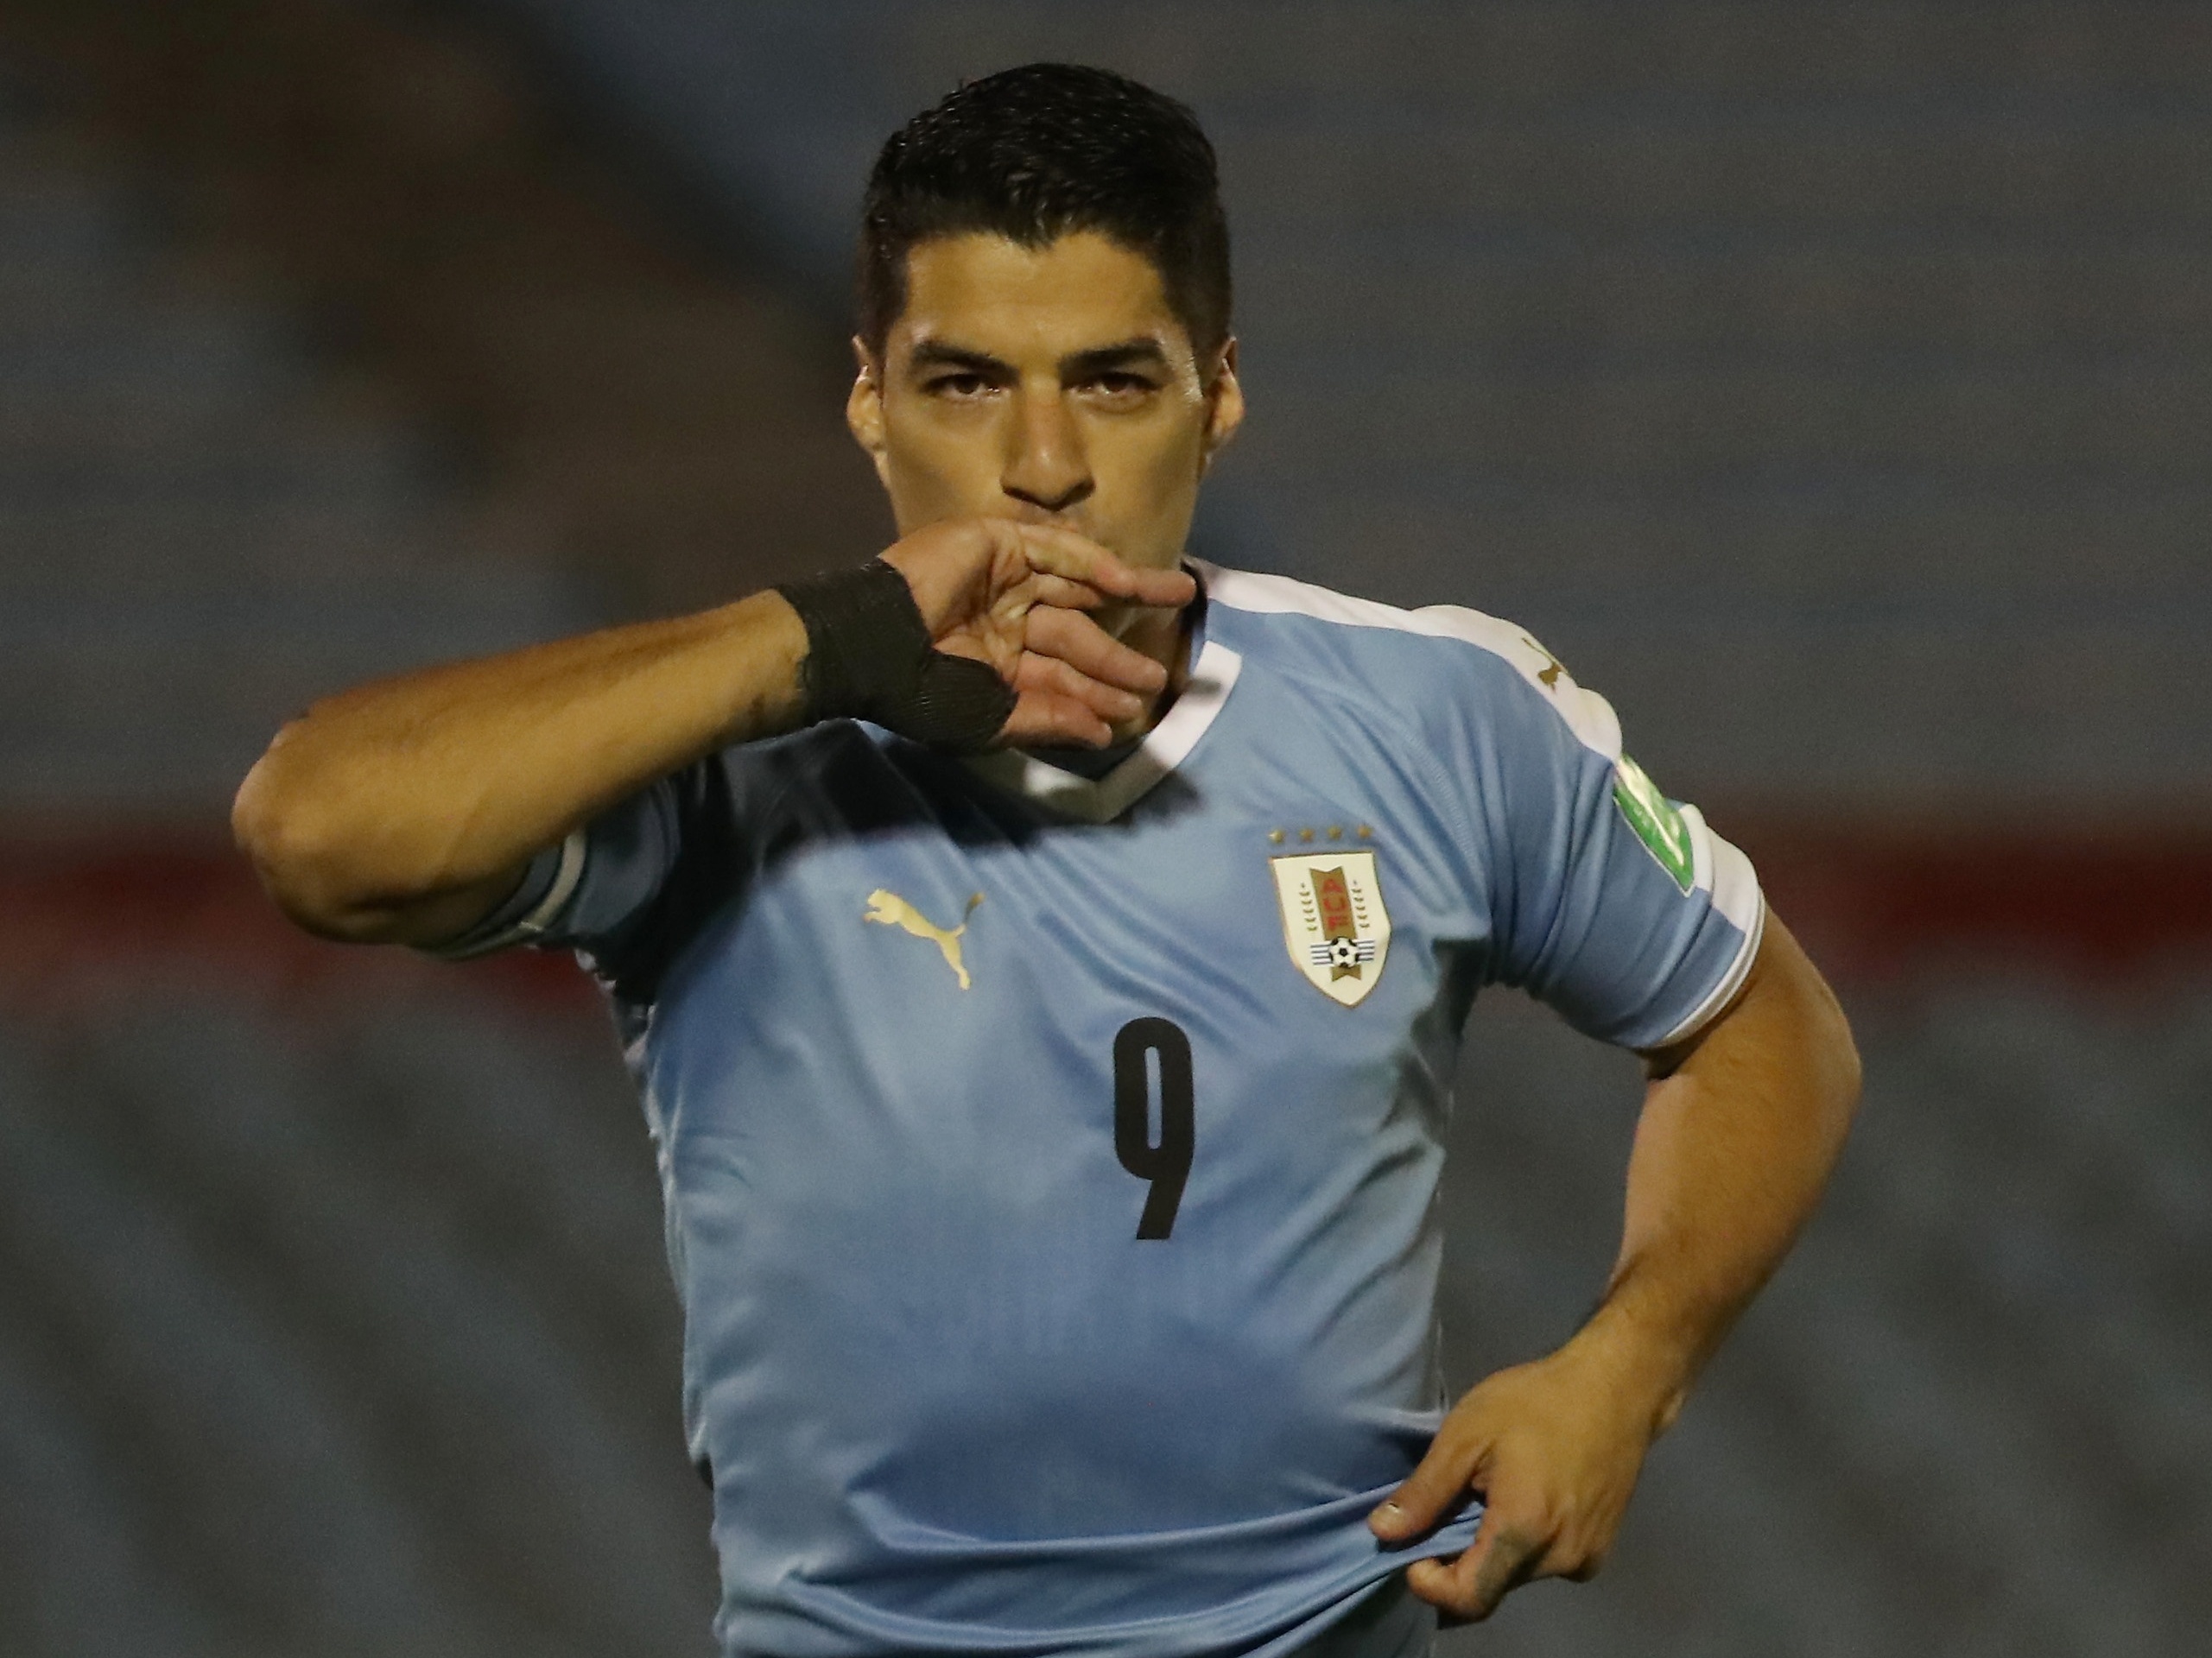 Uruguai goleia e entra no G4 das eliminatórias - CONMEBOL